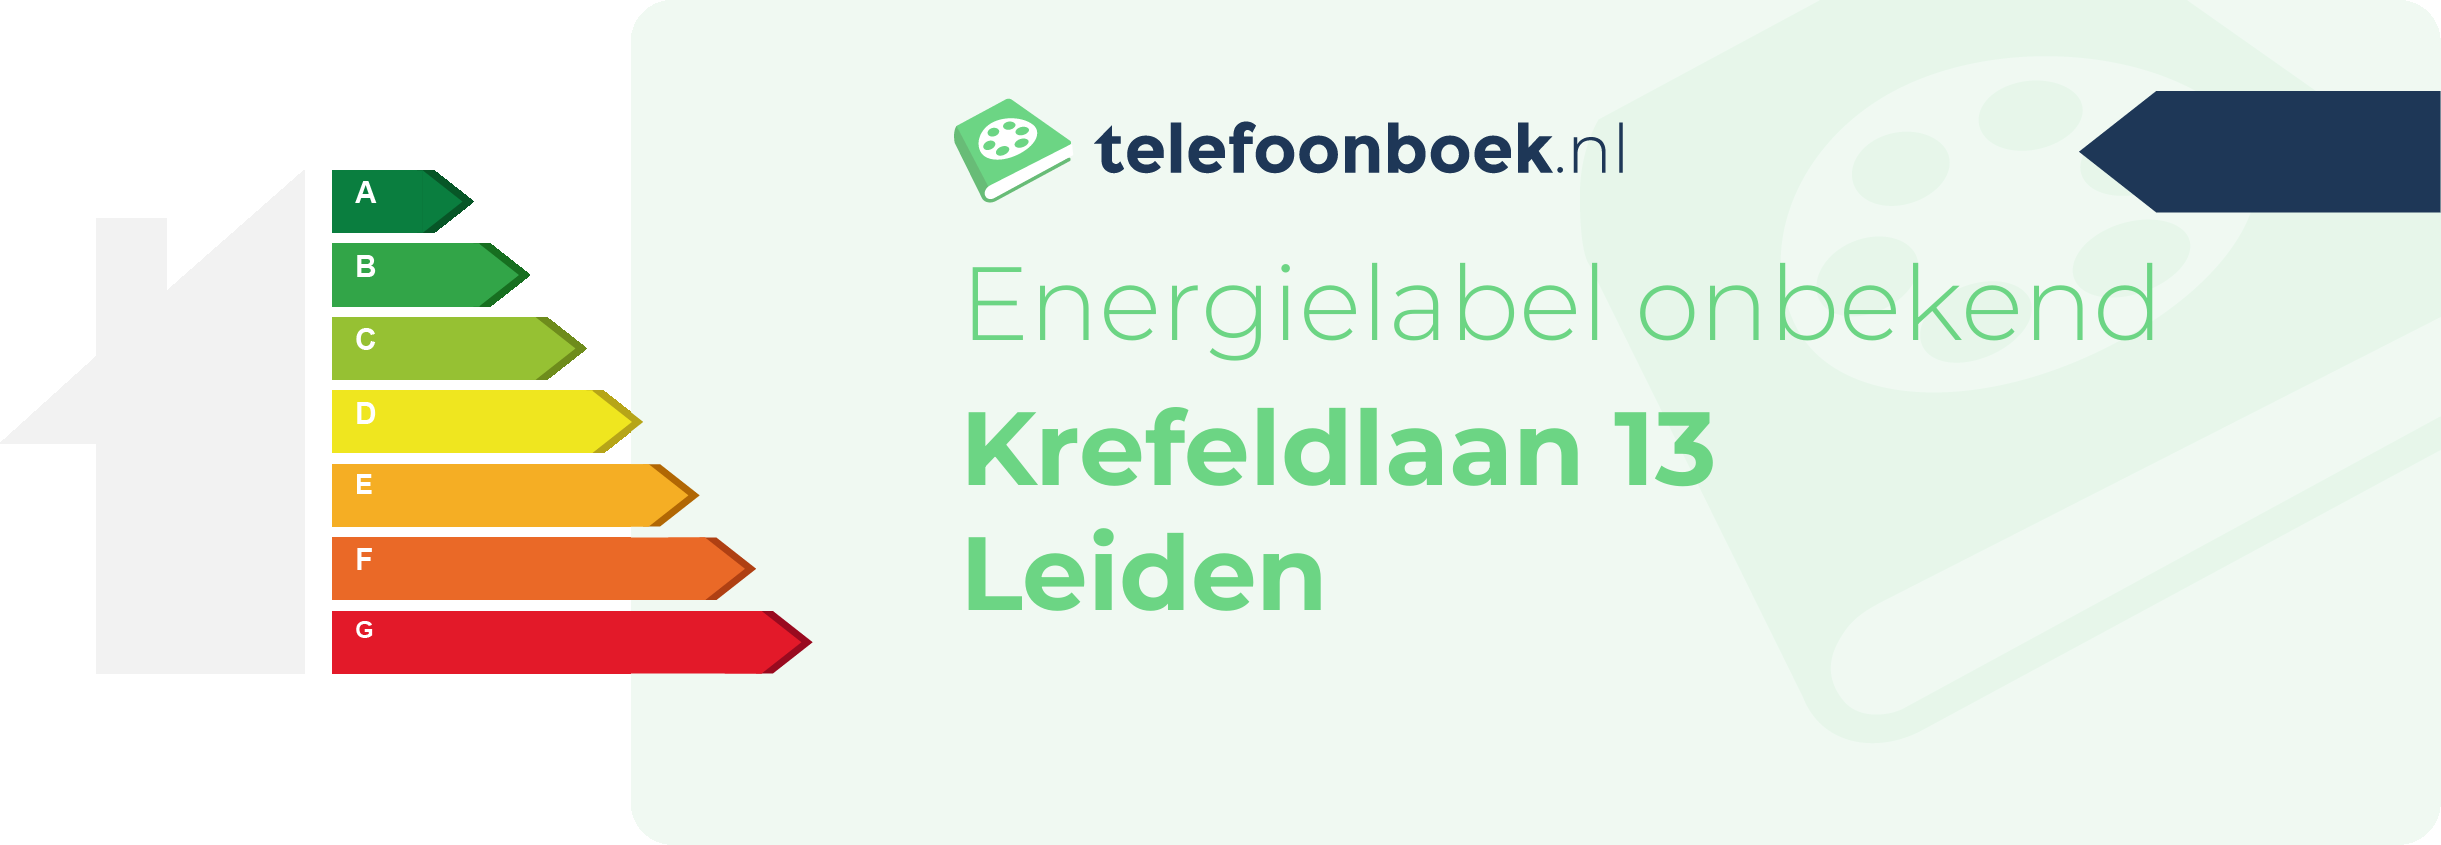 Energielabel Krefeldlaan 13 Leiden